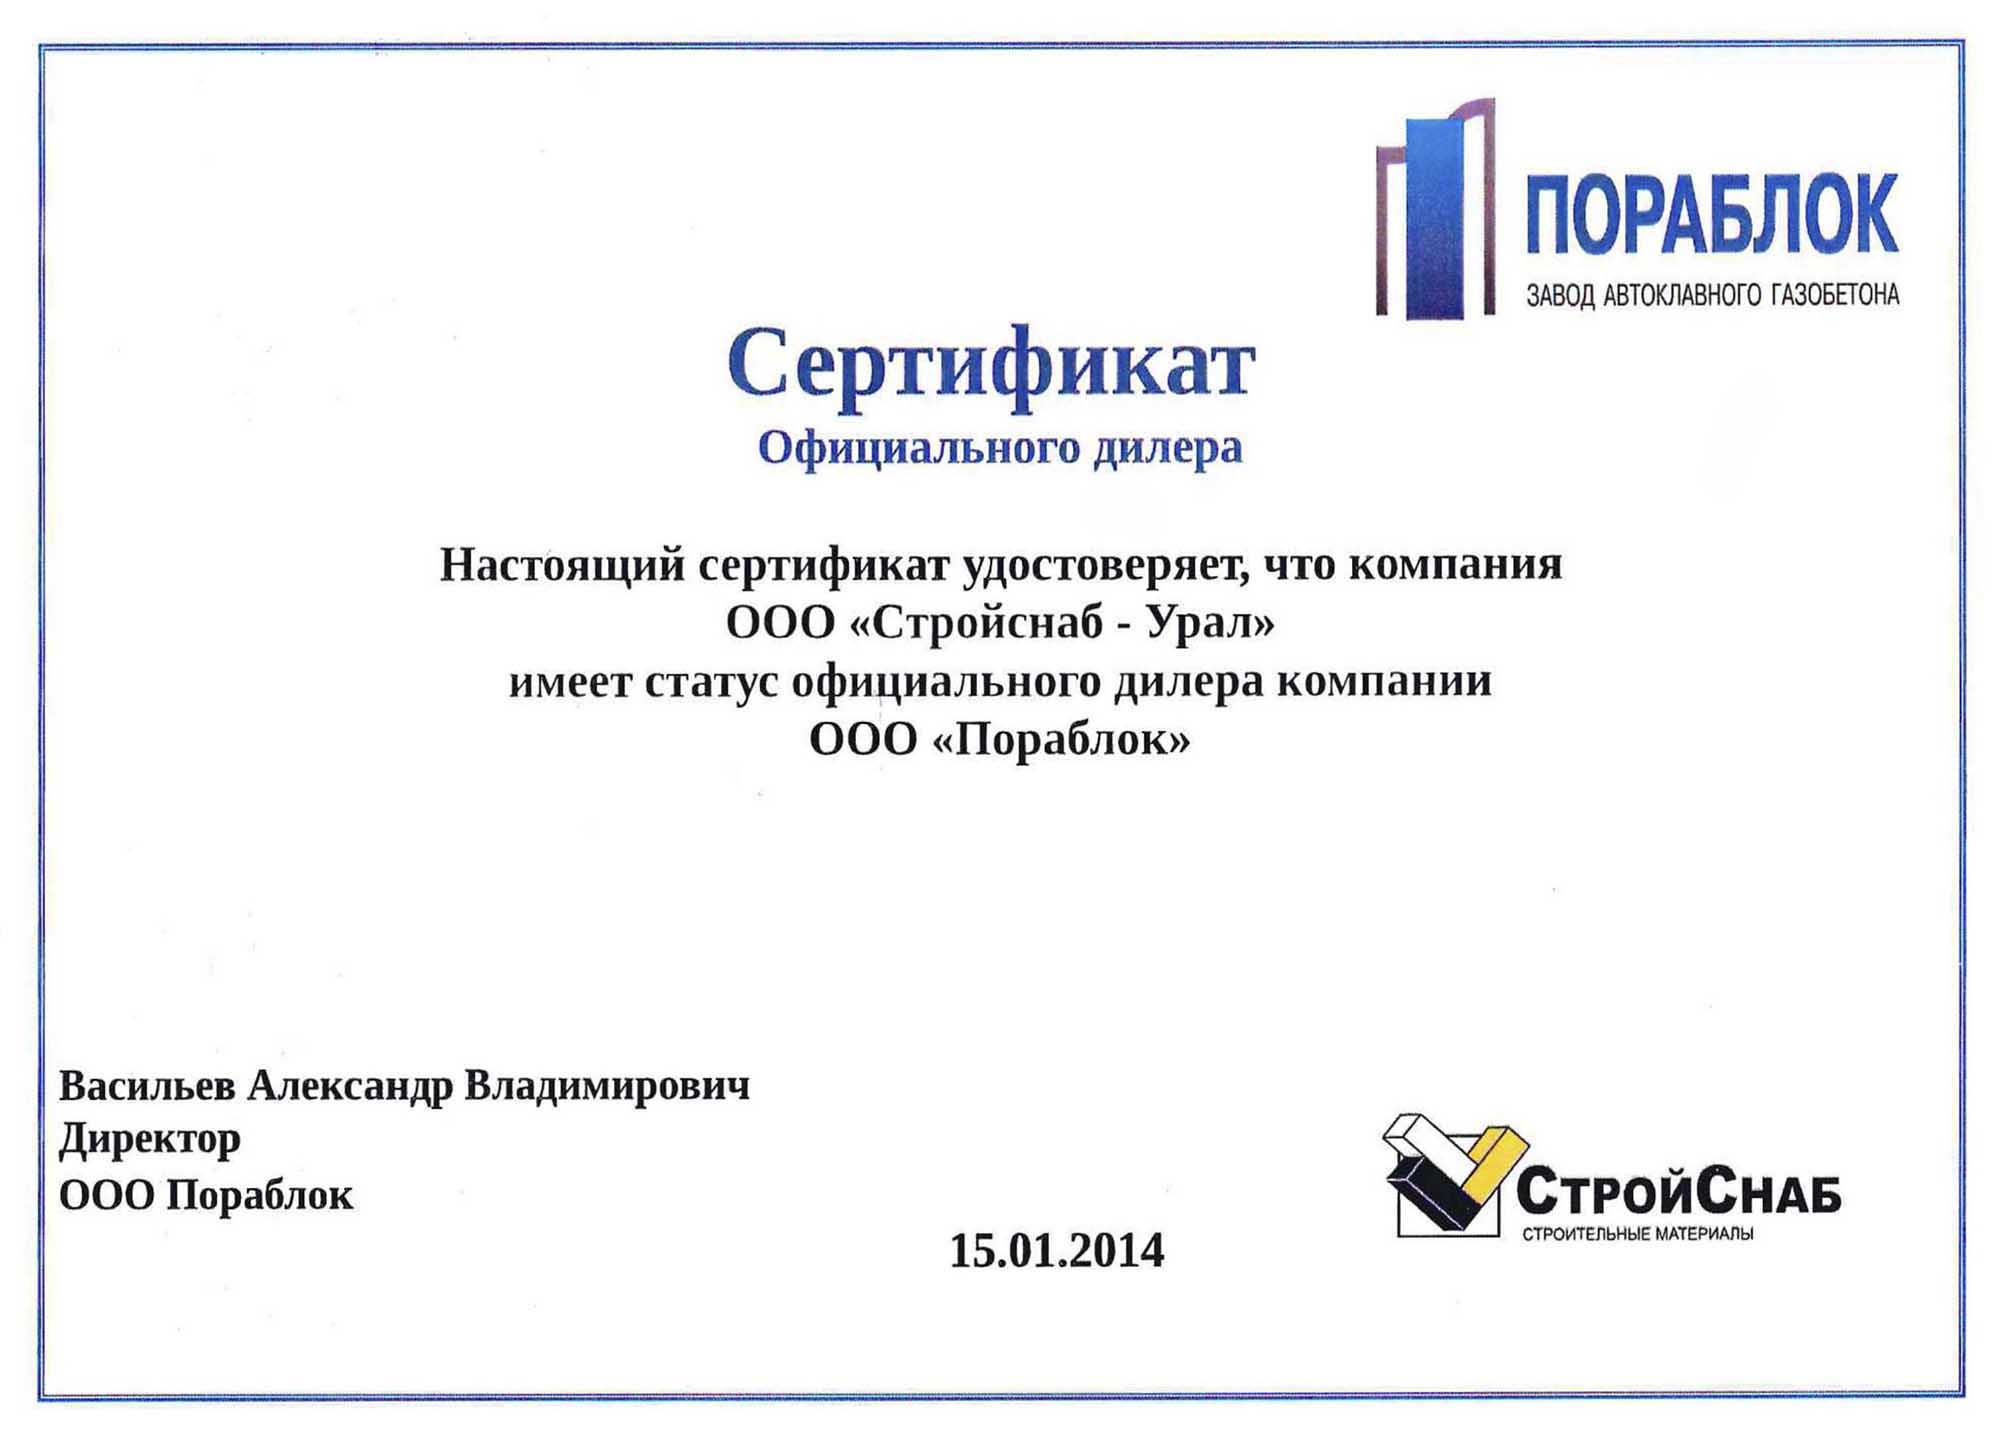 Сертификат официального дилера завода ПОРАБЛОК